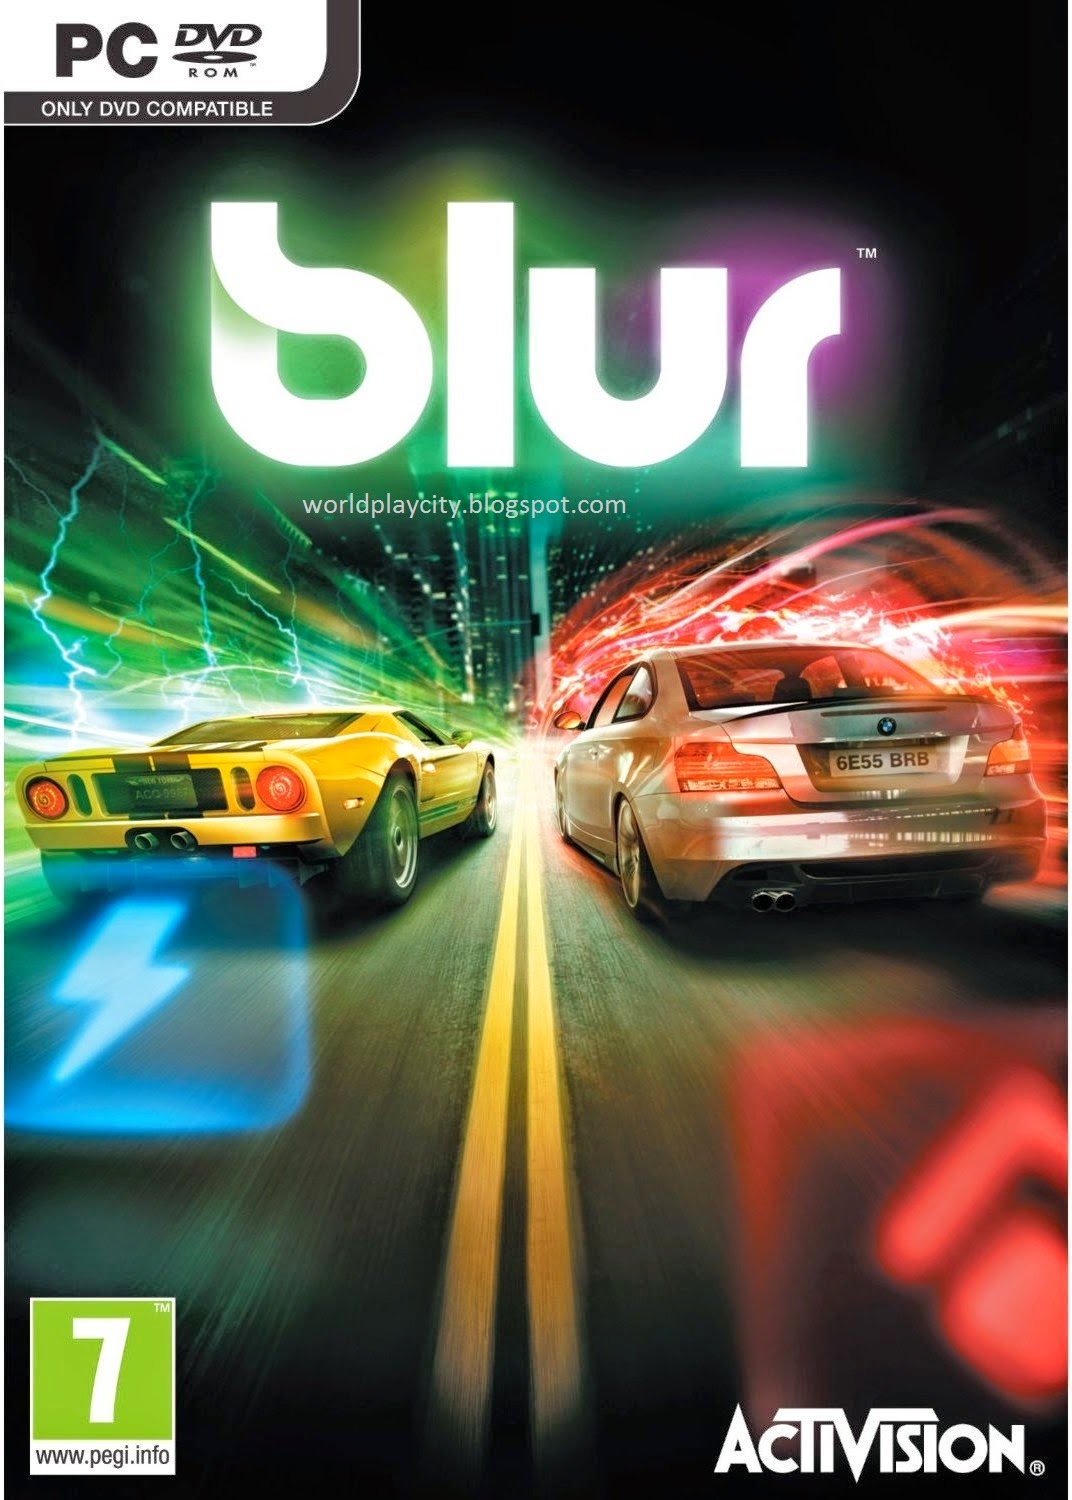 Blur PC Racing Game Free Download Full Version